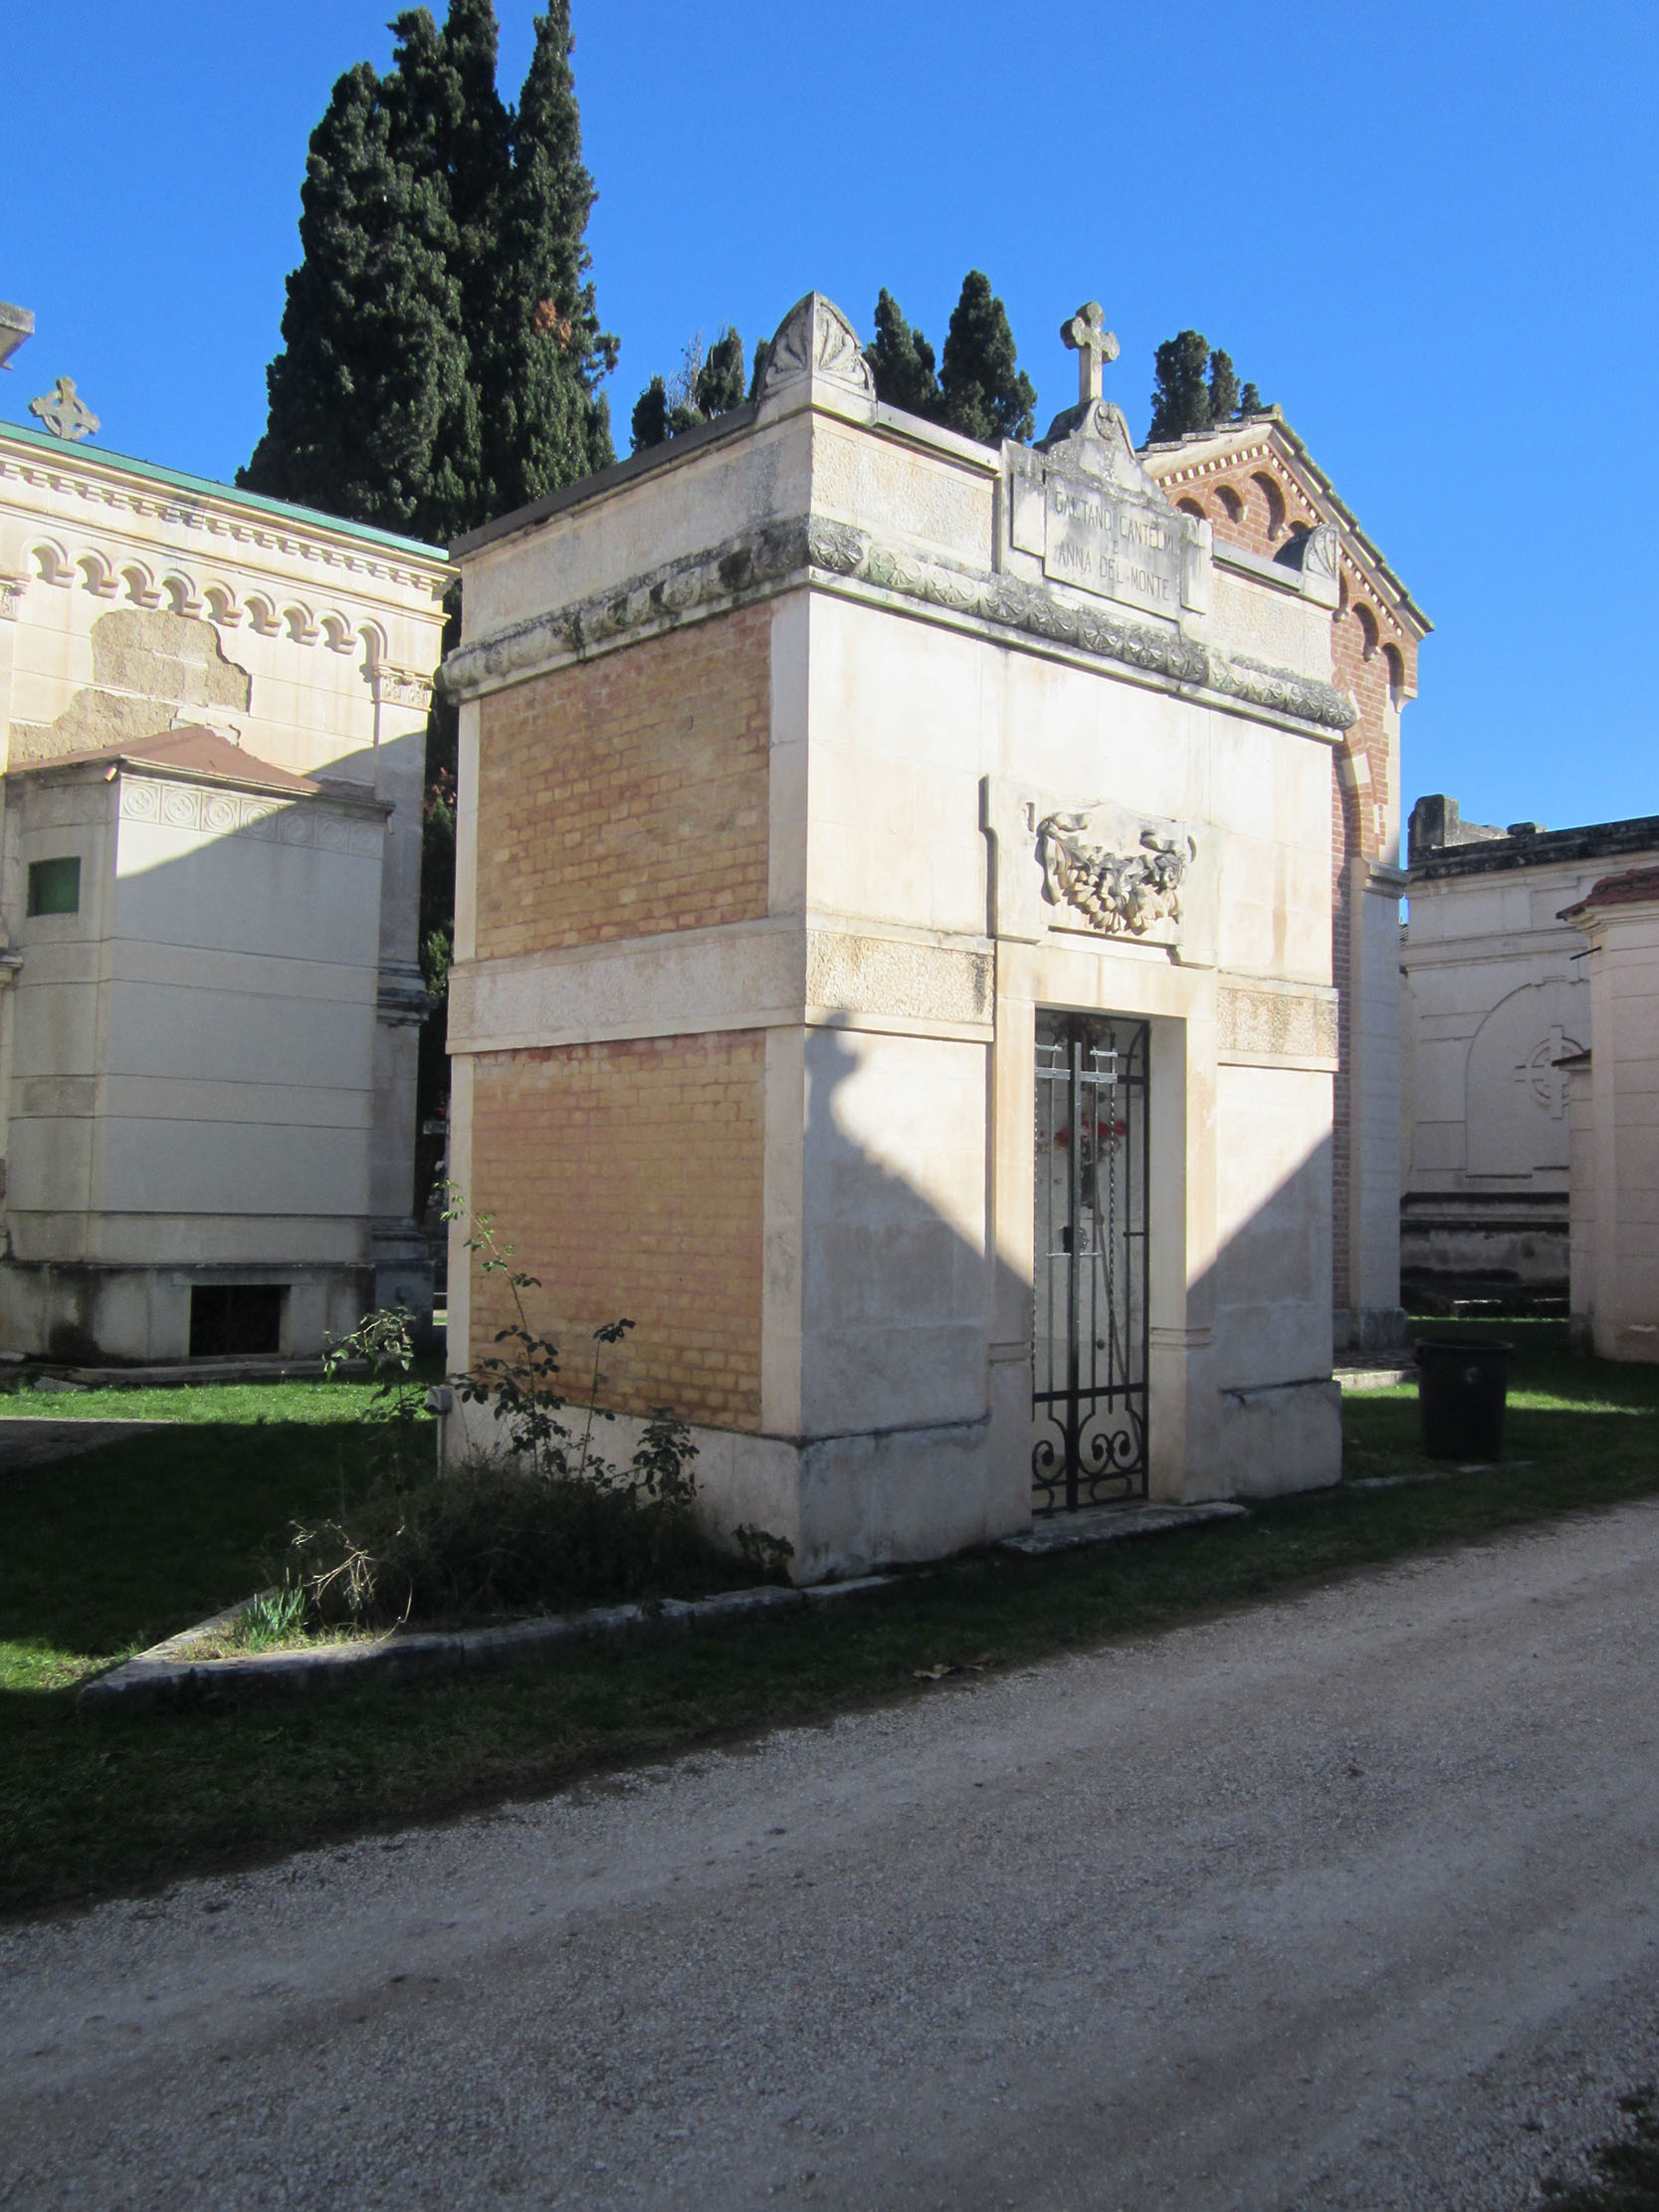 Cappella cimiteriale Gaetano Cantelmi Anna Del Monte (cimitero, monumentale) - Sulmona (AQ) 